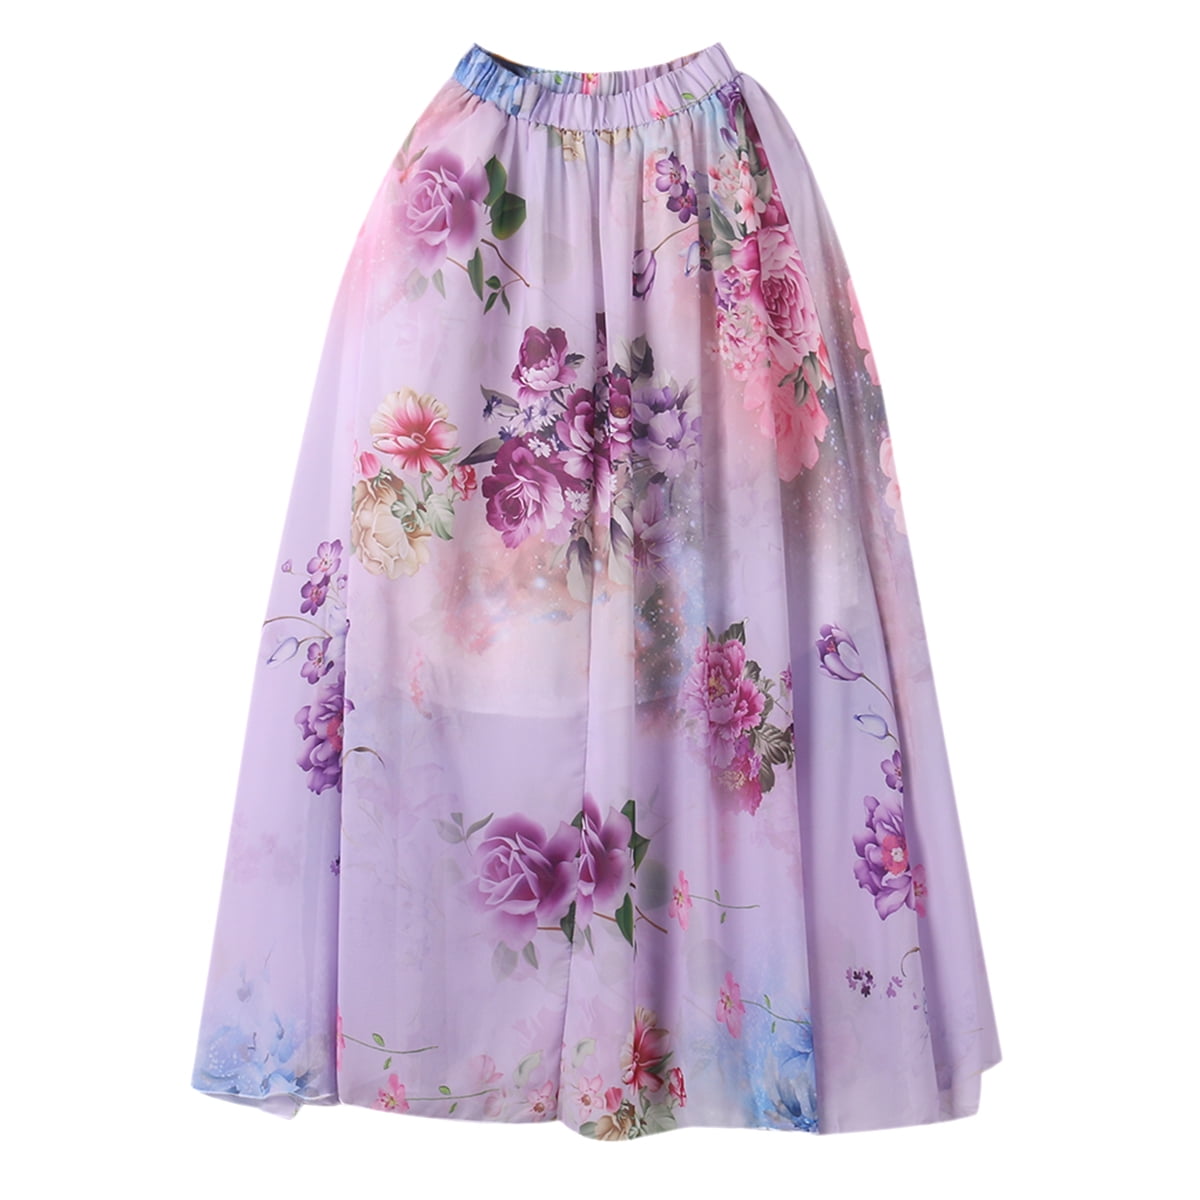 Caitzr Women' s Chiffon Boho Skirt Sexy Floral Long Skirt High Waist ...